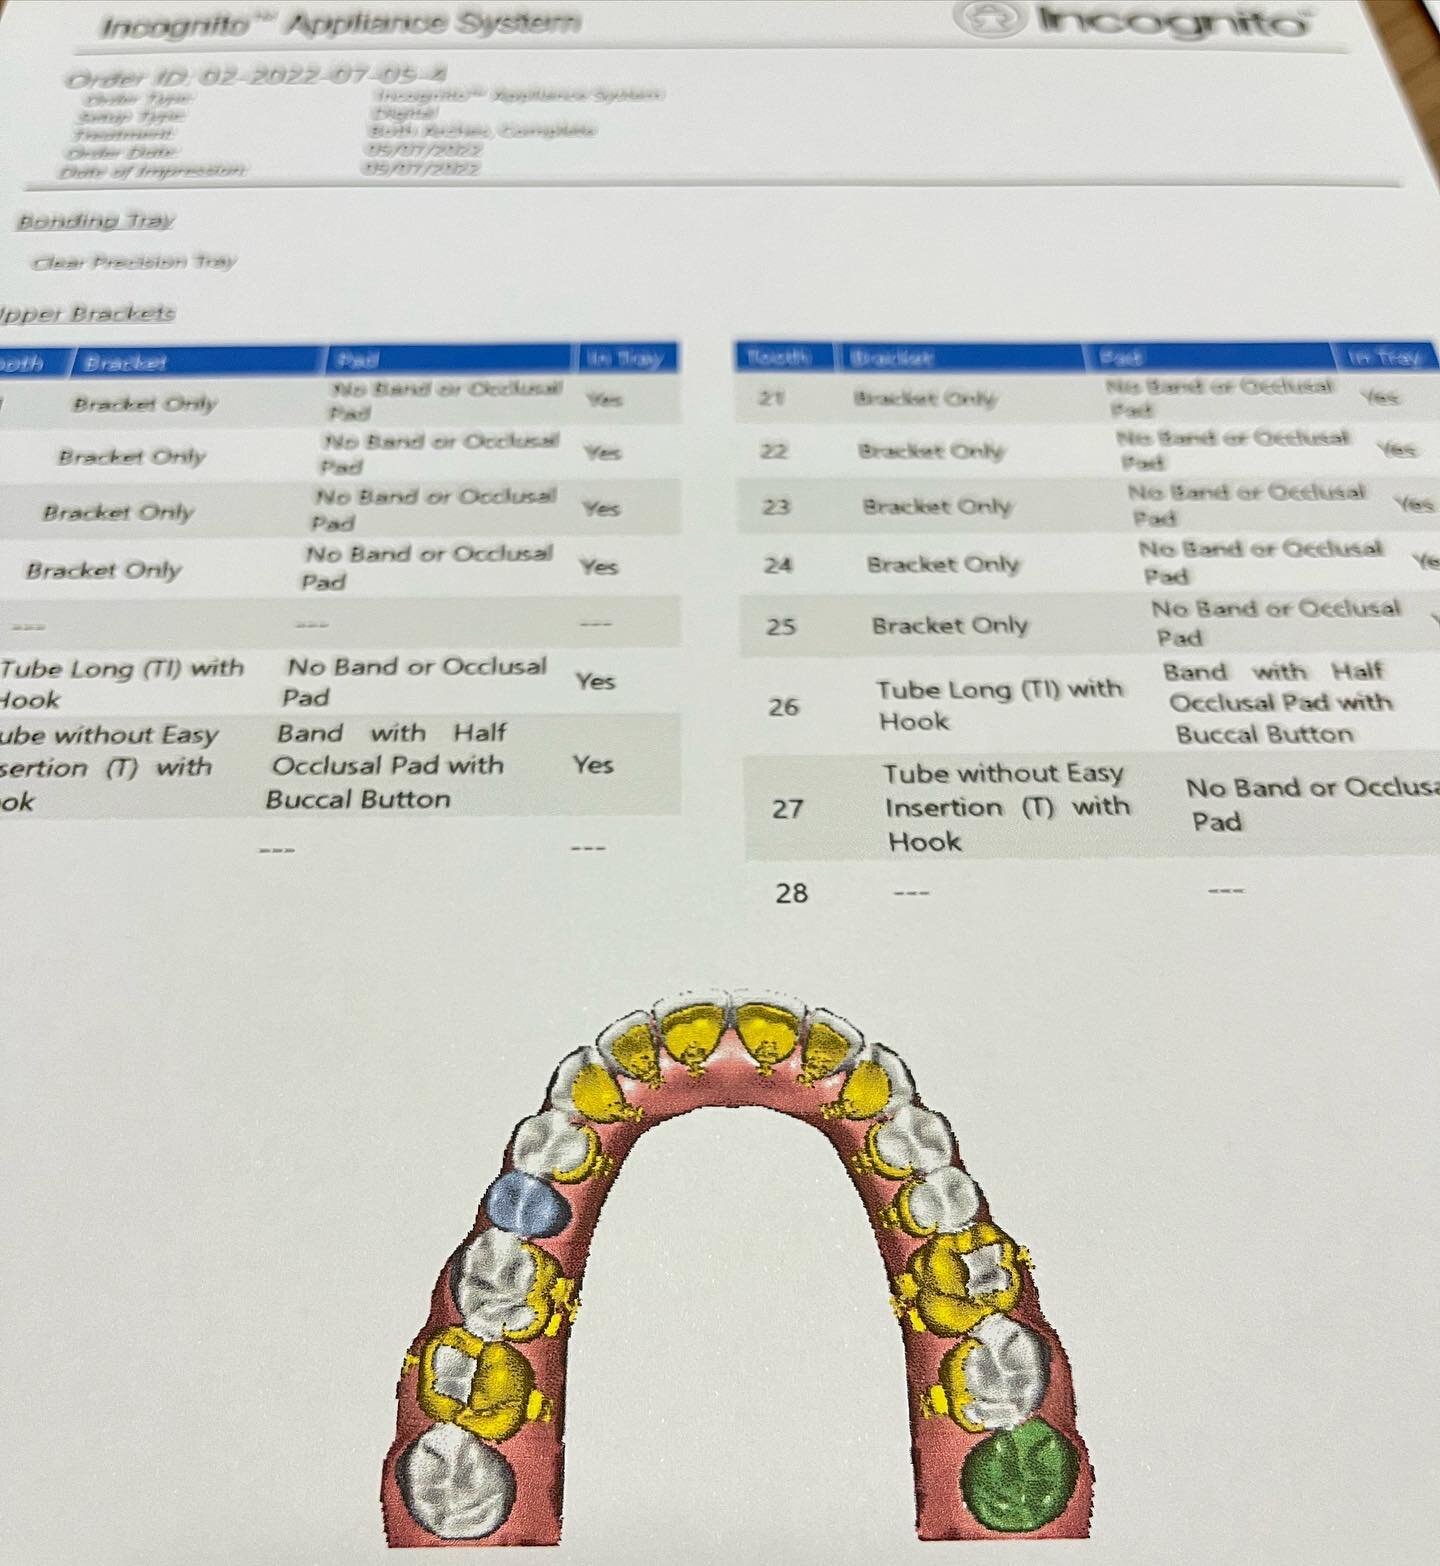 Revisi&oacute;n del tratamiento planificado
✨Empleamos tiempo antes de comenzar el tratamiento de ortodoncia lingual para repasar todo el proceso
✨Dise&ntilde;o del bracket y de los arcos
.

.
#ortodonciaojanguren #ortodoncialingual #incognitobraces 